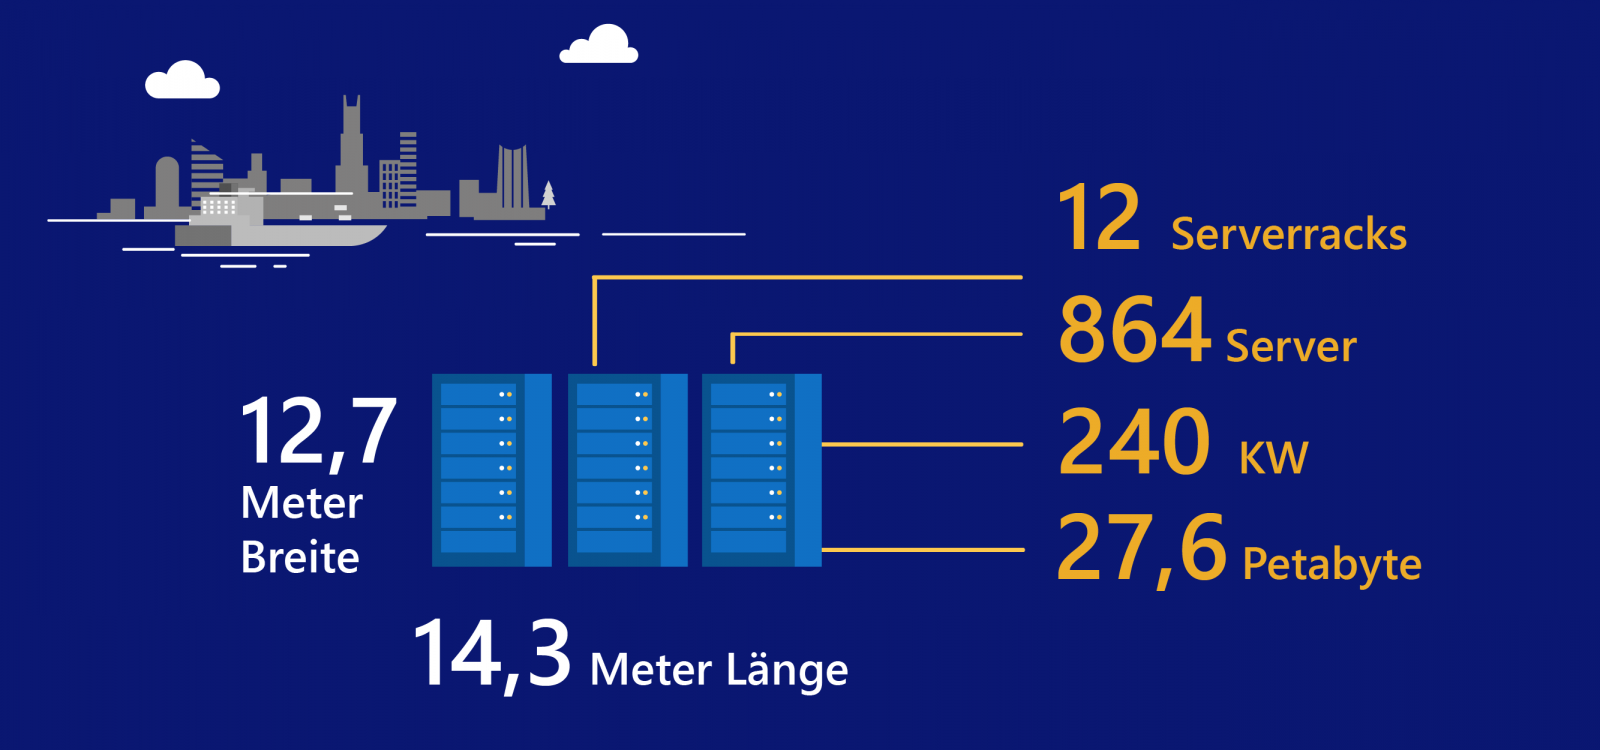 Das Unterwasser-Rechenzentrum ist 12,7 Meter breit, 14,3 Meter lang. Es hat 12 Serverracks, 864 Server, 240 KW und 27,6 Petabyte